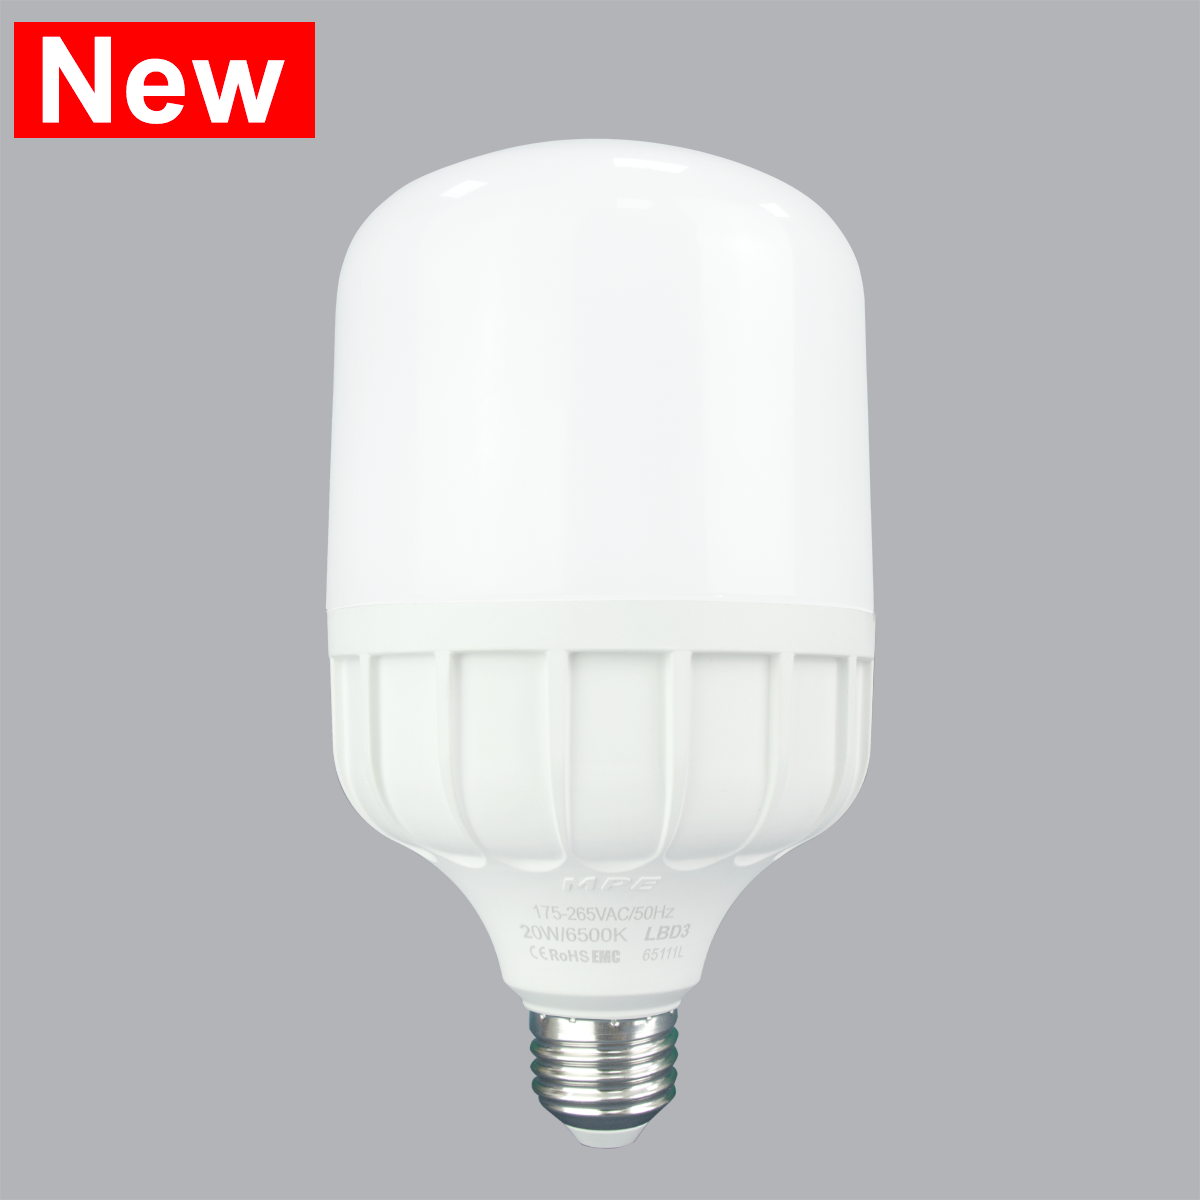 Đèn led Bulb chống ẩm 50W MPE, LBD3-50T ánh sáng trắng